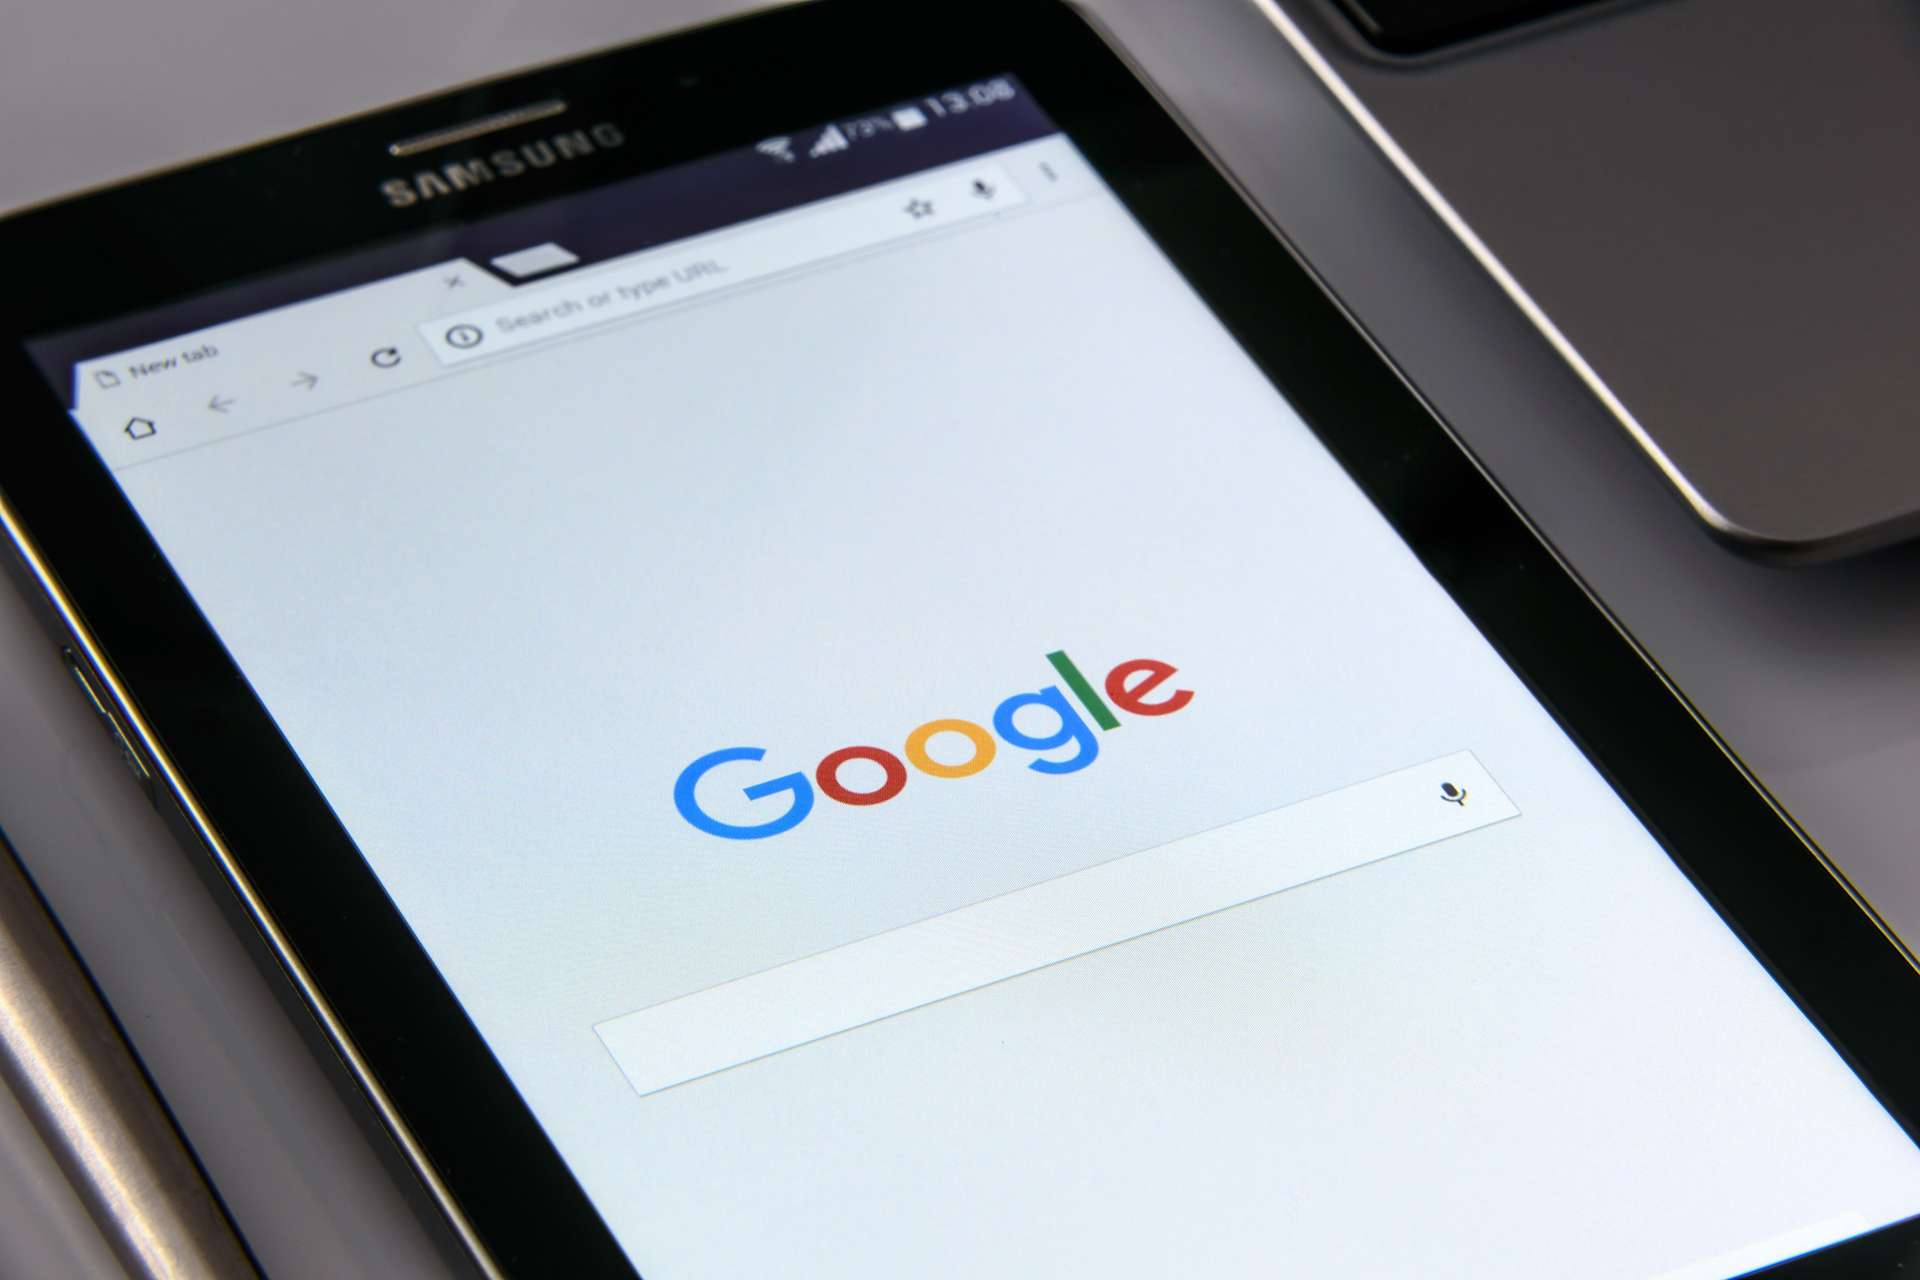 Гугл је најмоћнији претраживач на Интернету